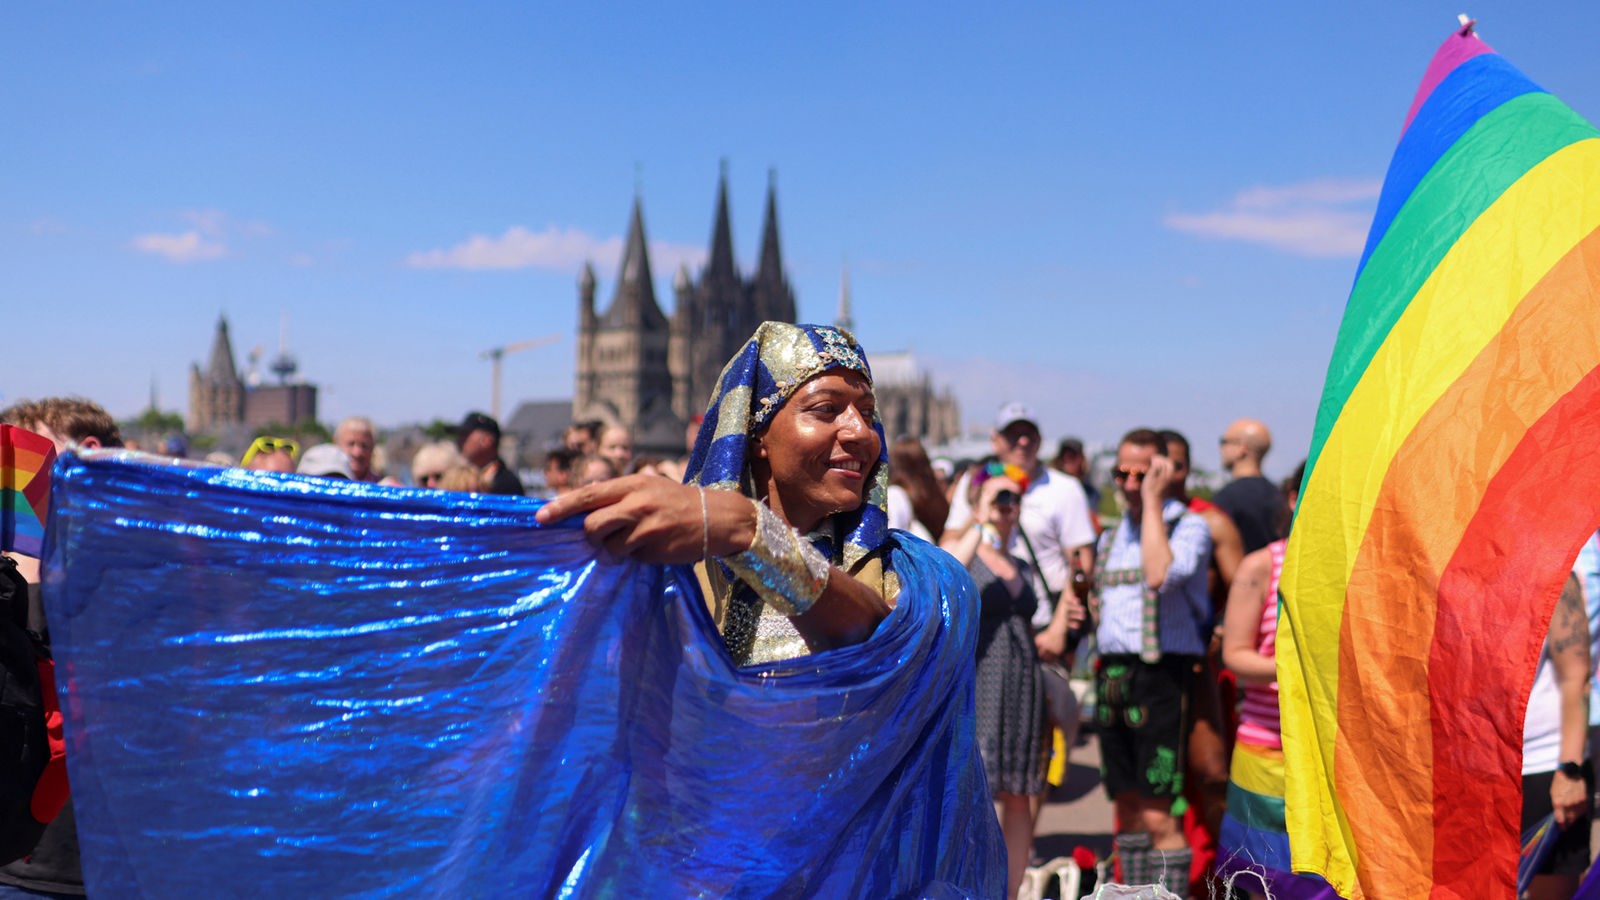 Bunt, schrill und politisch: Mehr als 1 Million feiern CSD in Köln